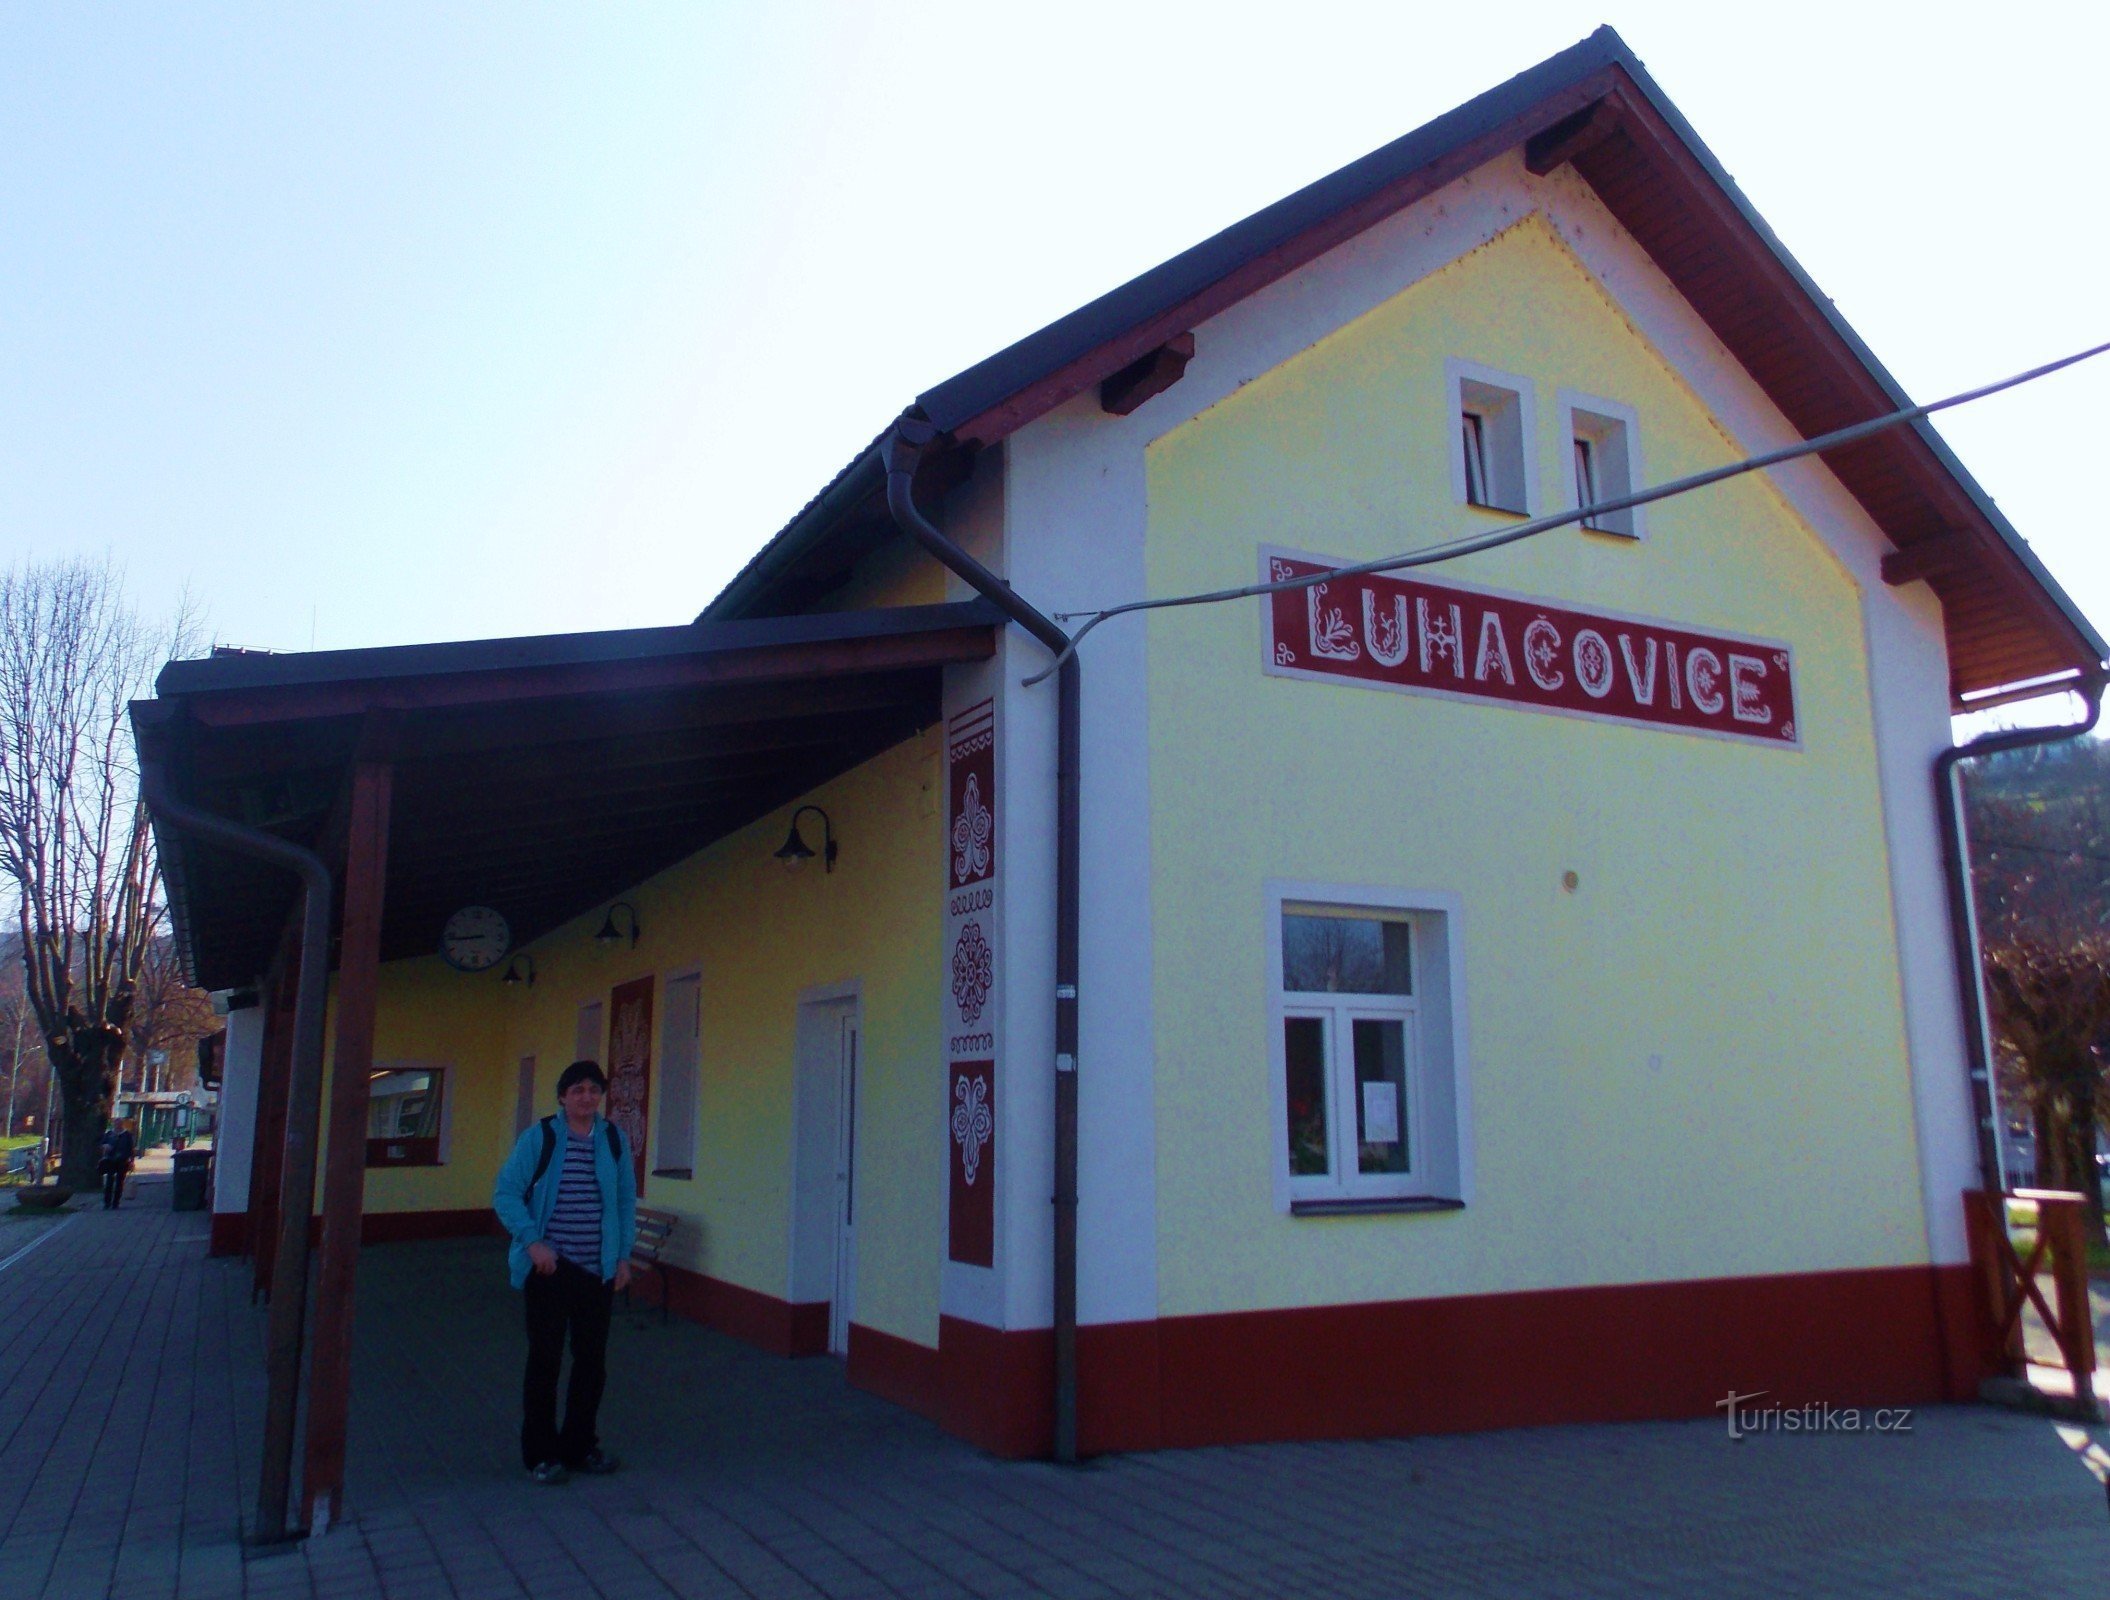 Железнодорожный вокзал в Лугачовицах